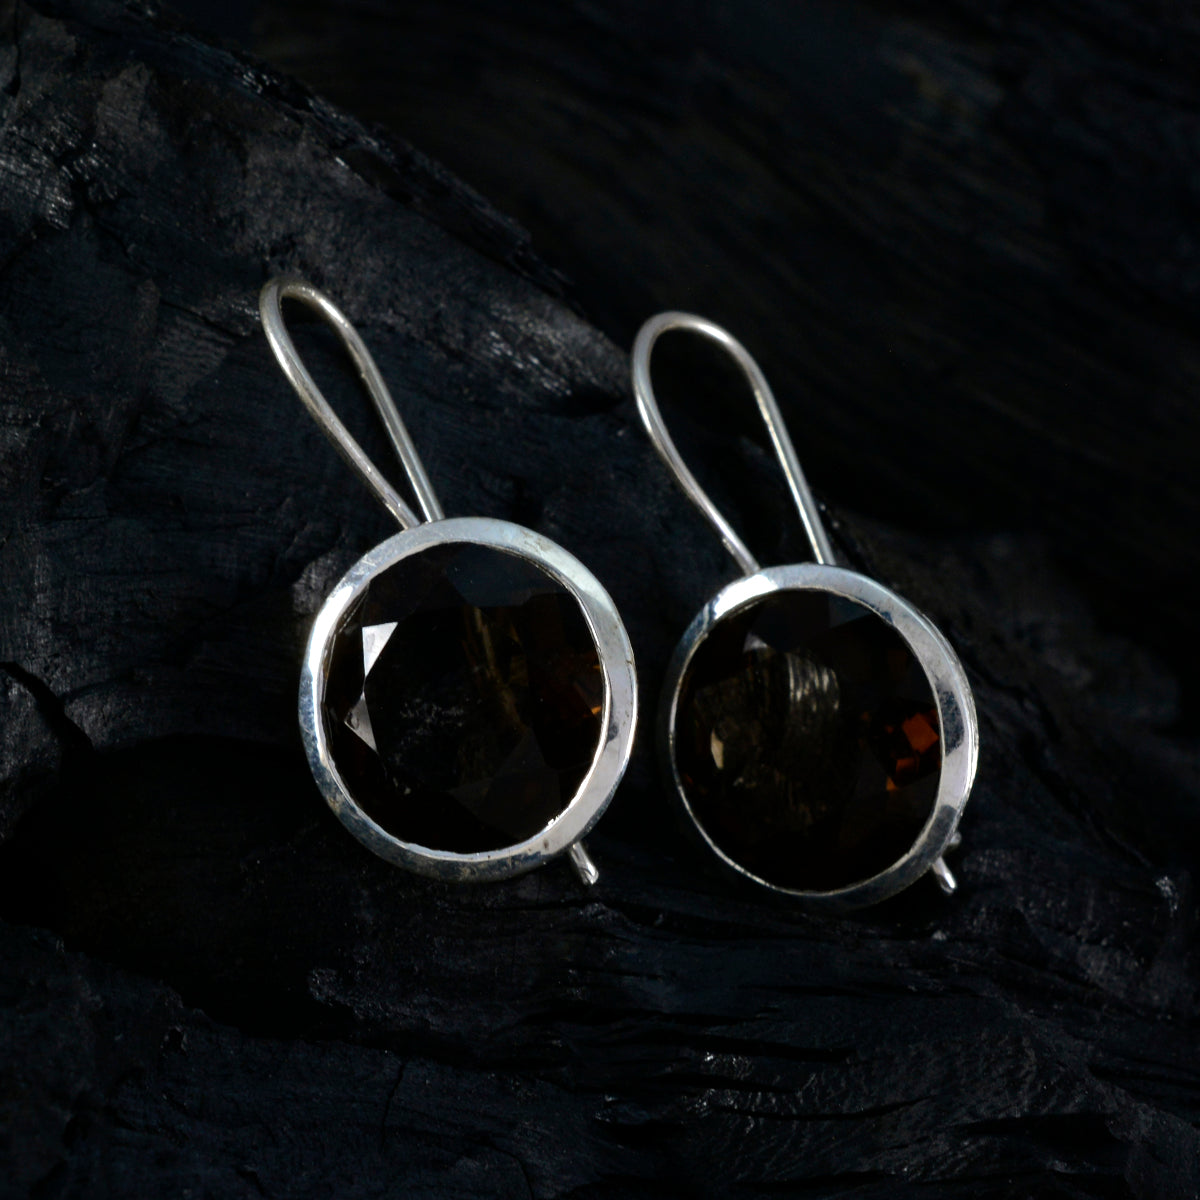 Riyo Prachtige 925 Sterling Zilveren Oorbel Voor Vrouwelijke Rookkwarts Oorbel Bezel Instelling Bruin Oorbel Dangle Earring